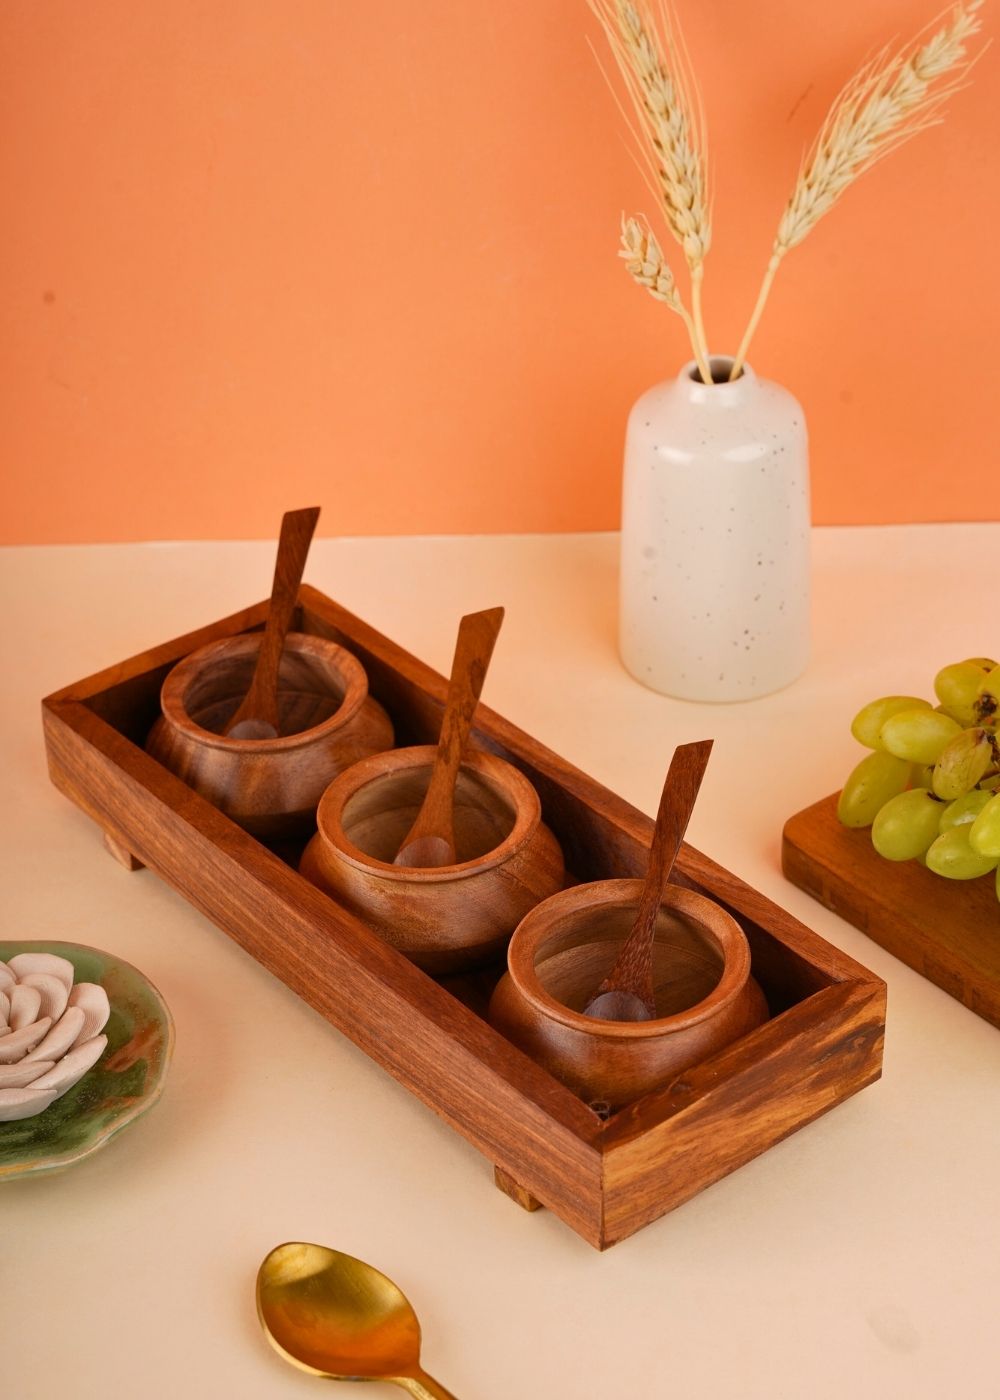 Achaar Jar set made by wood